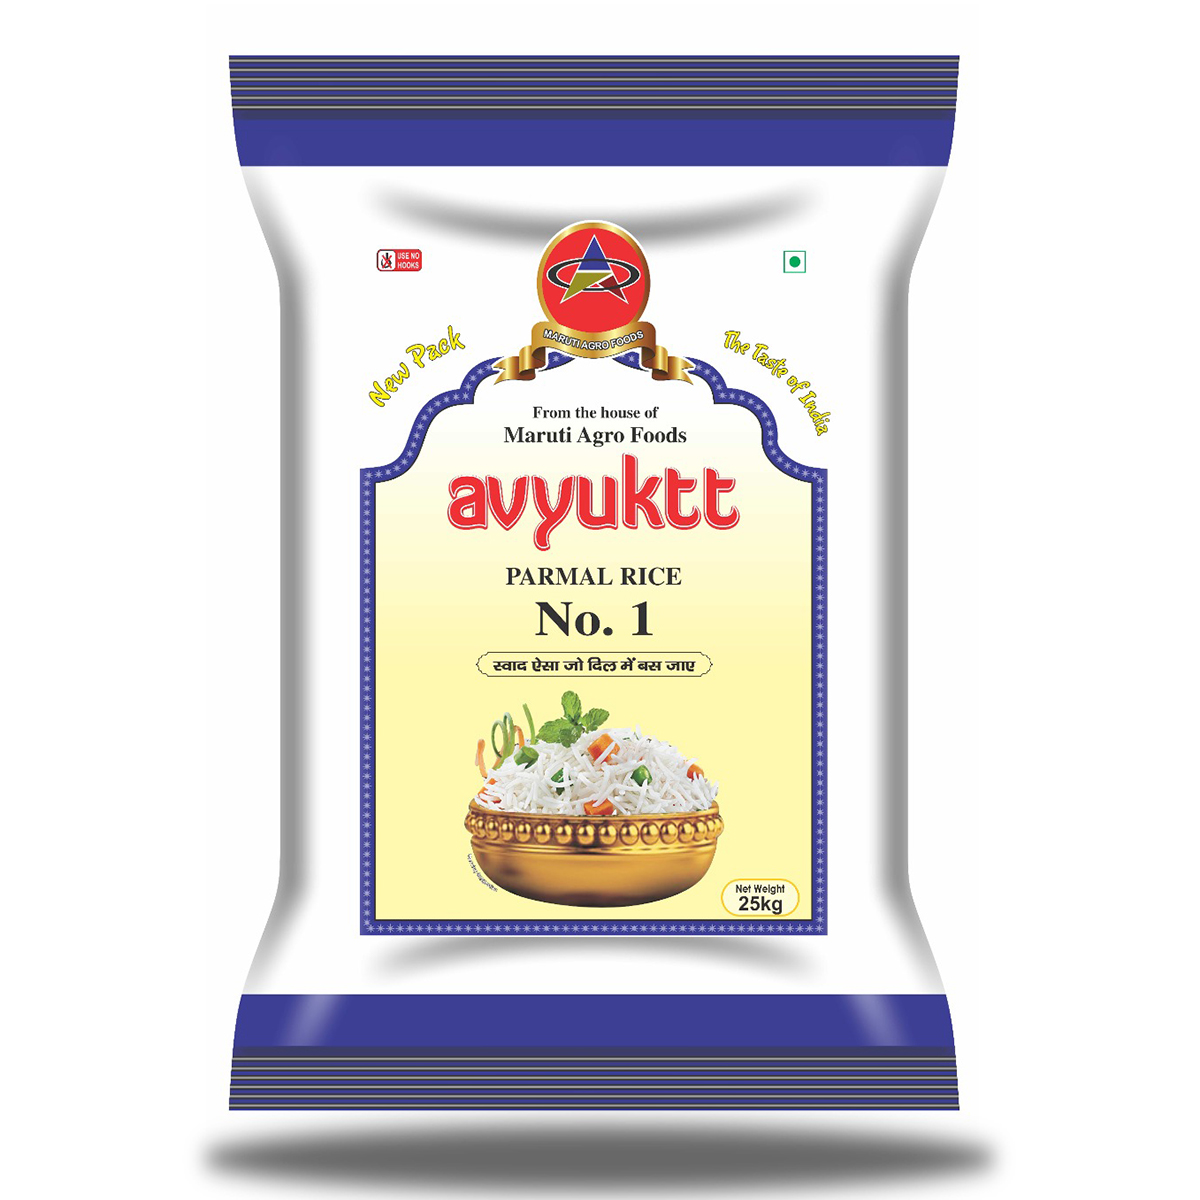 Avyukt Parmal Rice No. 1